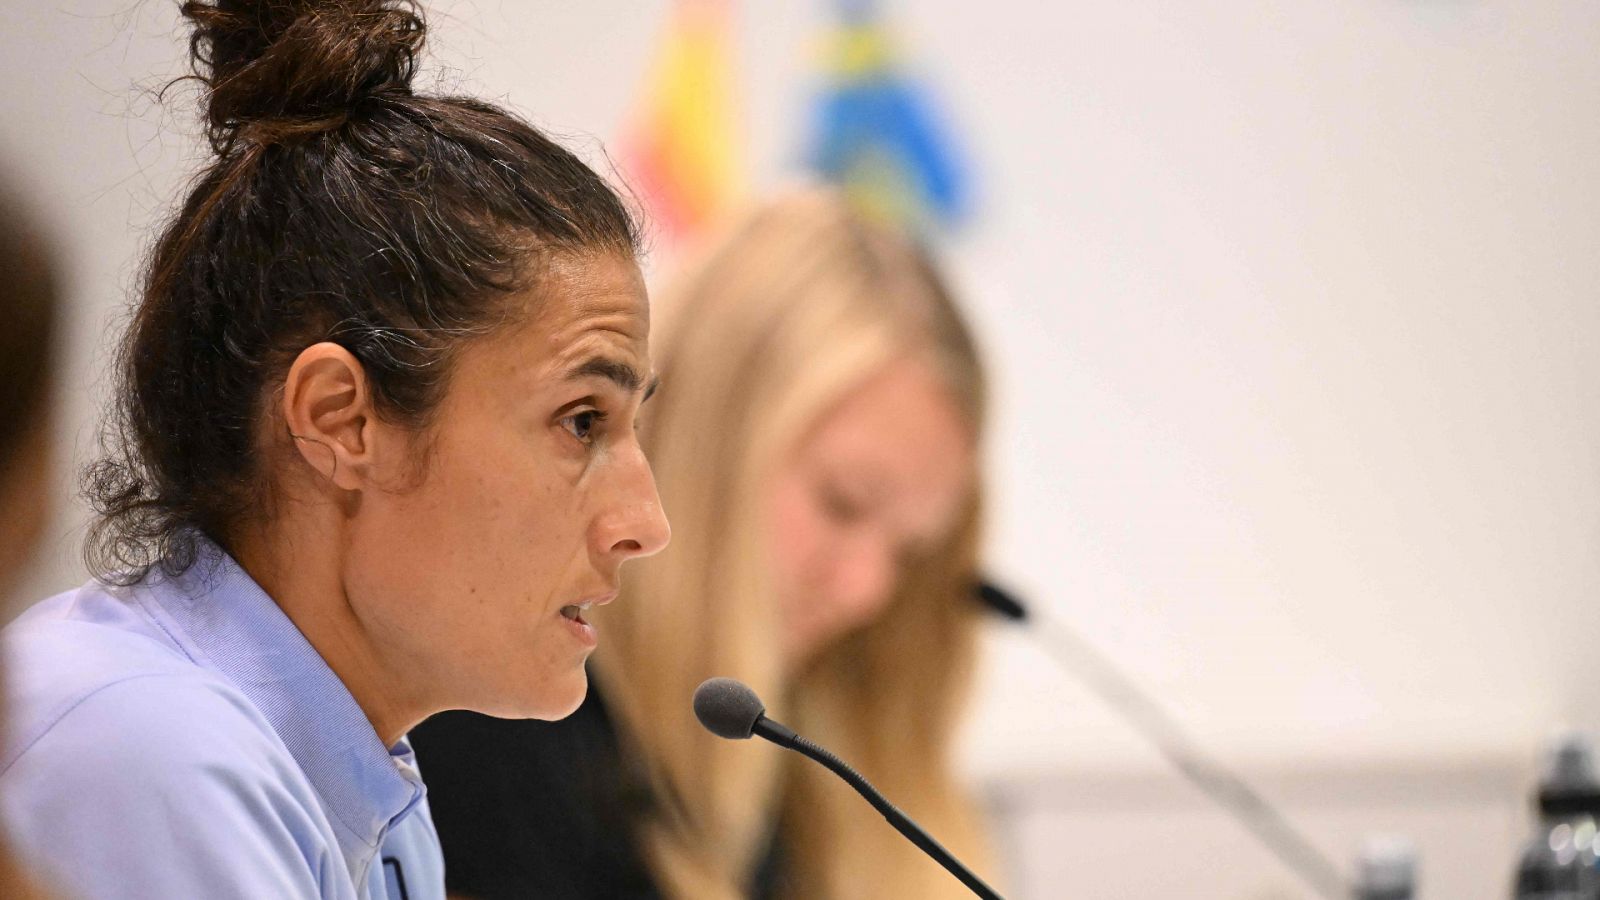 Fútbol - Rueda de prensa Montse Tomé seleccionadora nacional absoluta femenina y jugadoras - ver ahora